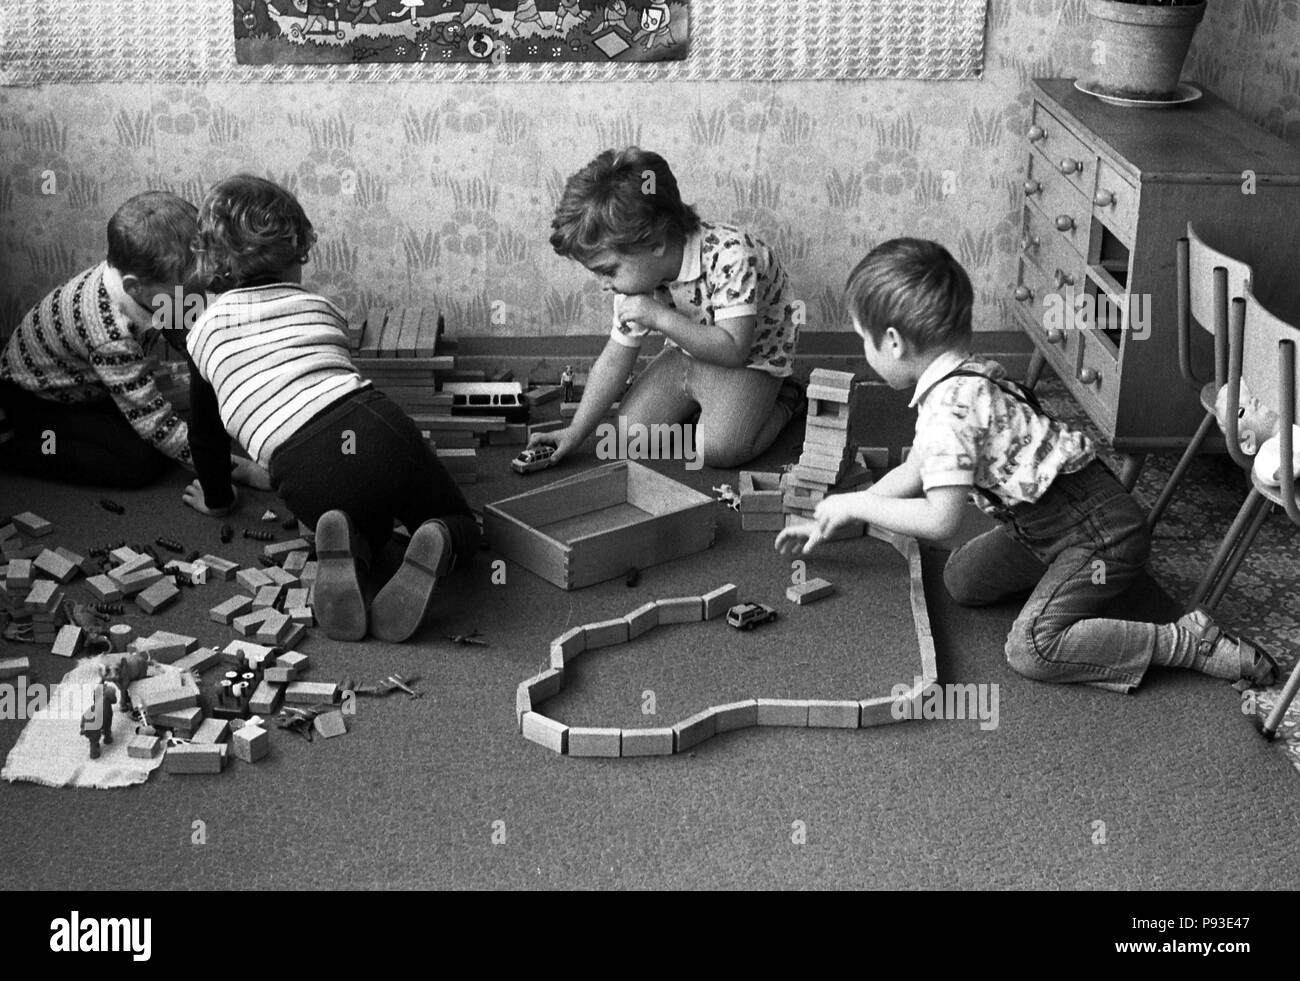 Berlin, DDR, les enfants jouent dans le jardin d'enfants avec des blocs en bois Banque D'Images